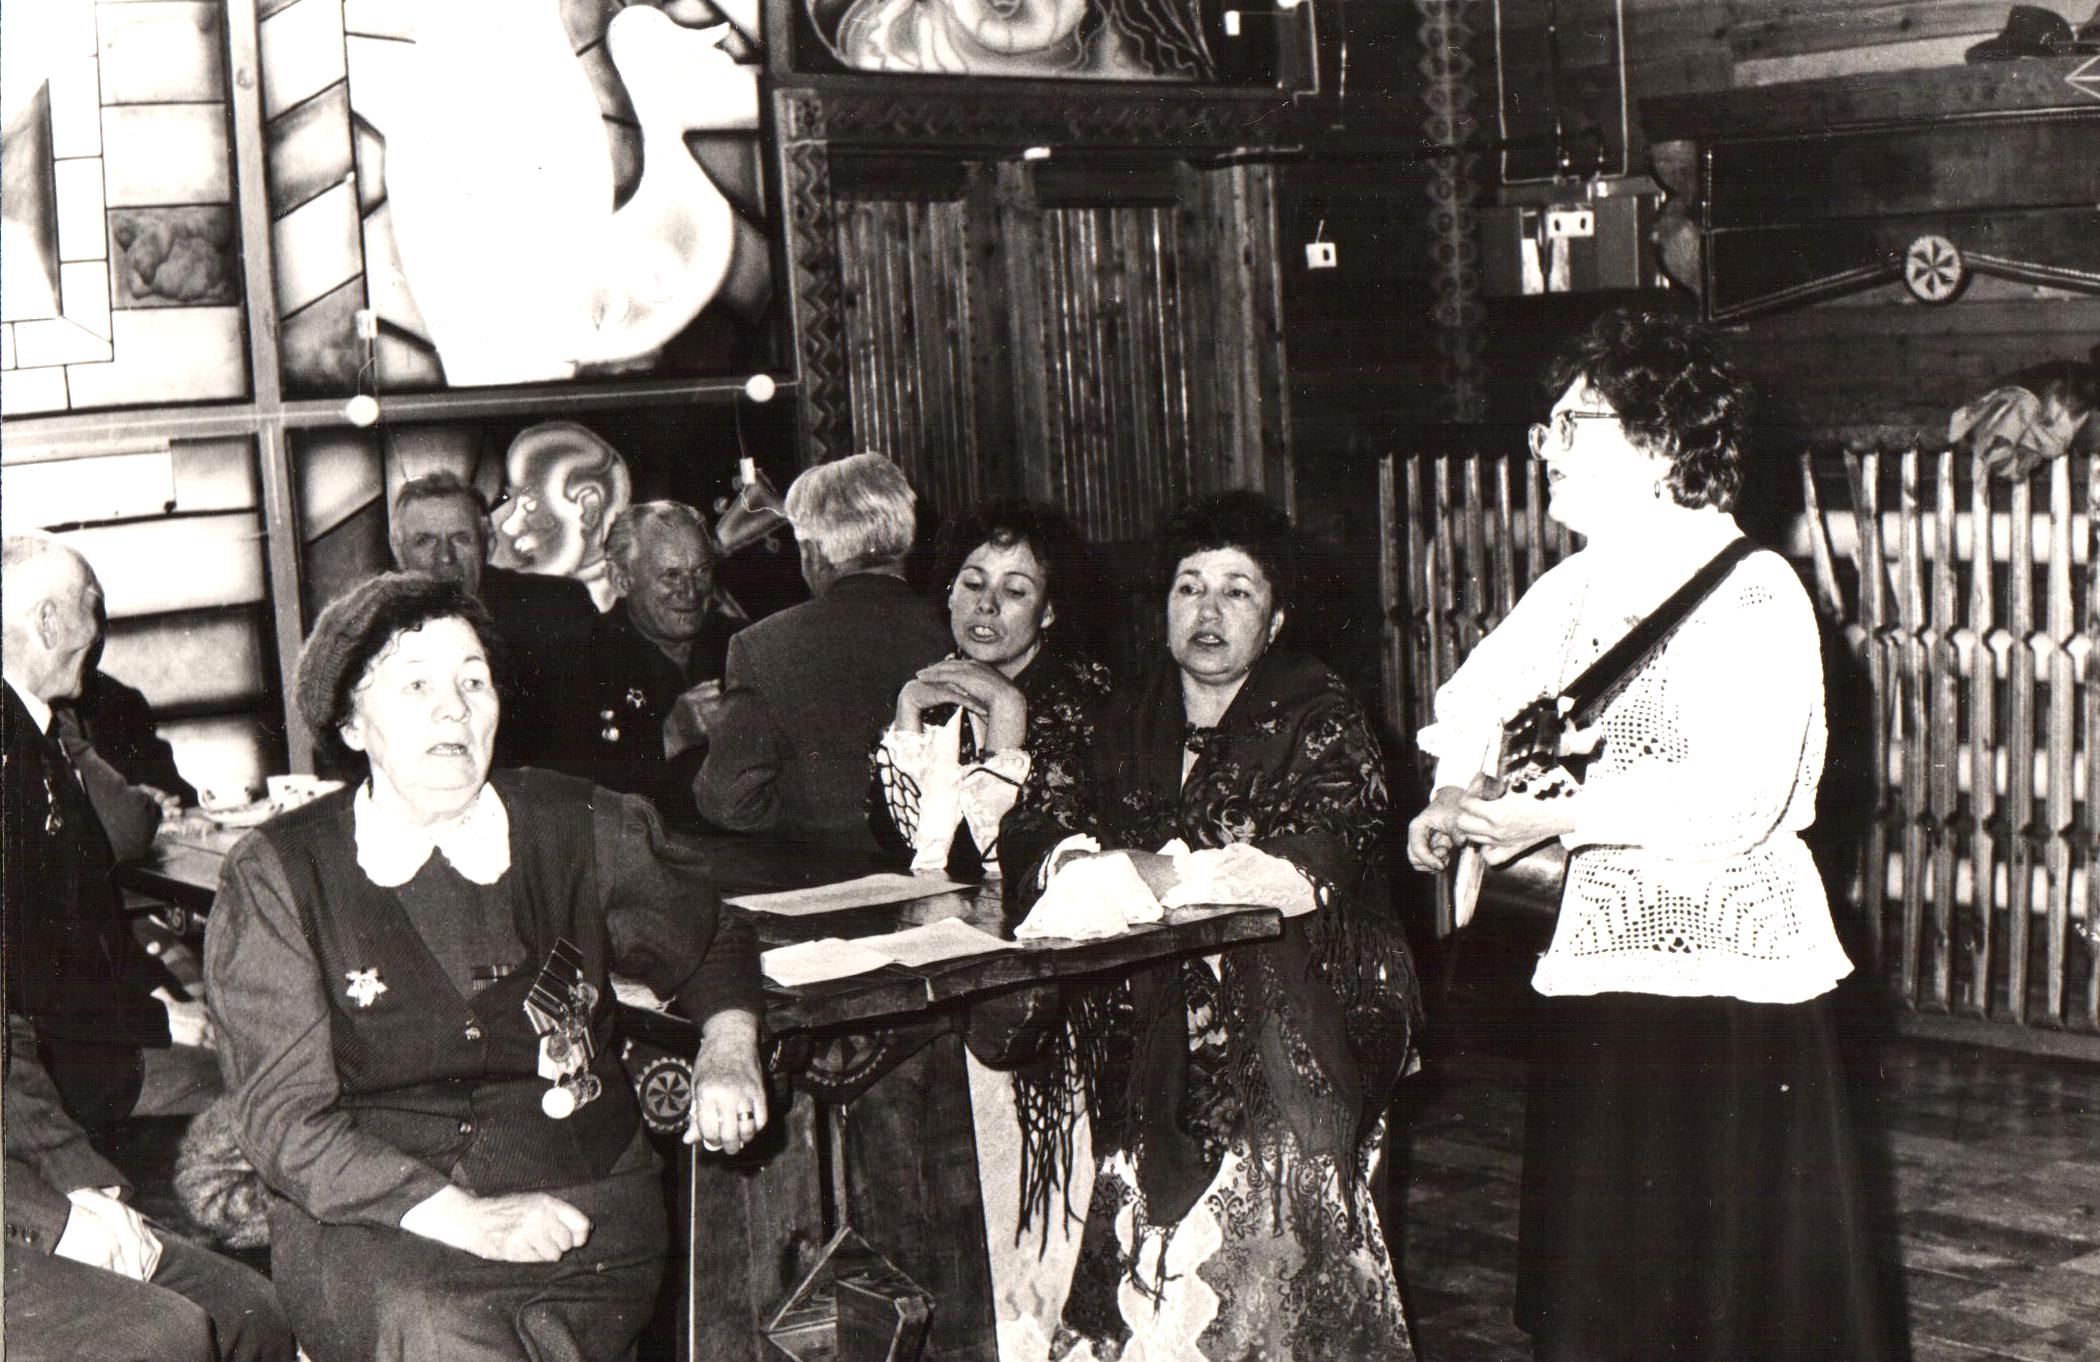 Жорник Ирина Яковлевна (на переднем плане слева), участник Великой Отечественной войны  среди горожан  во время памятного мероприятия